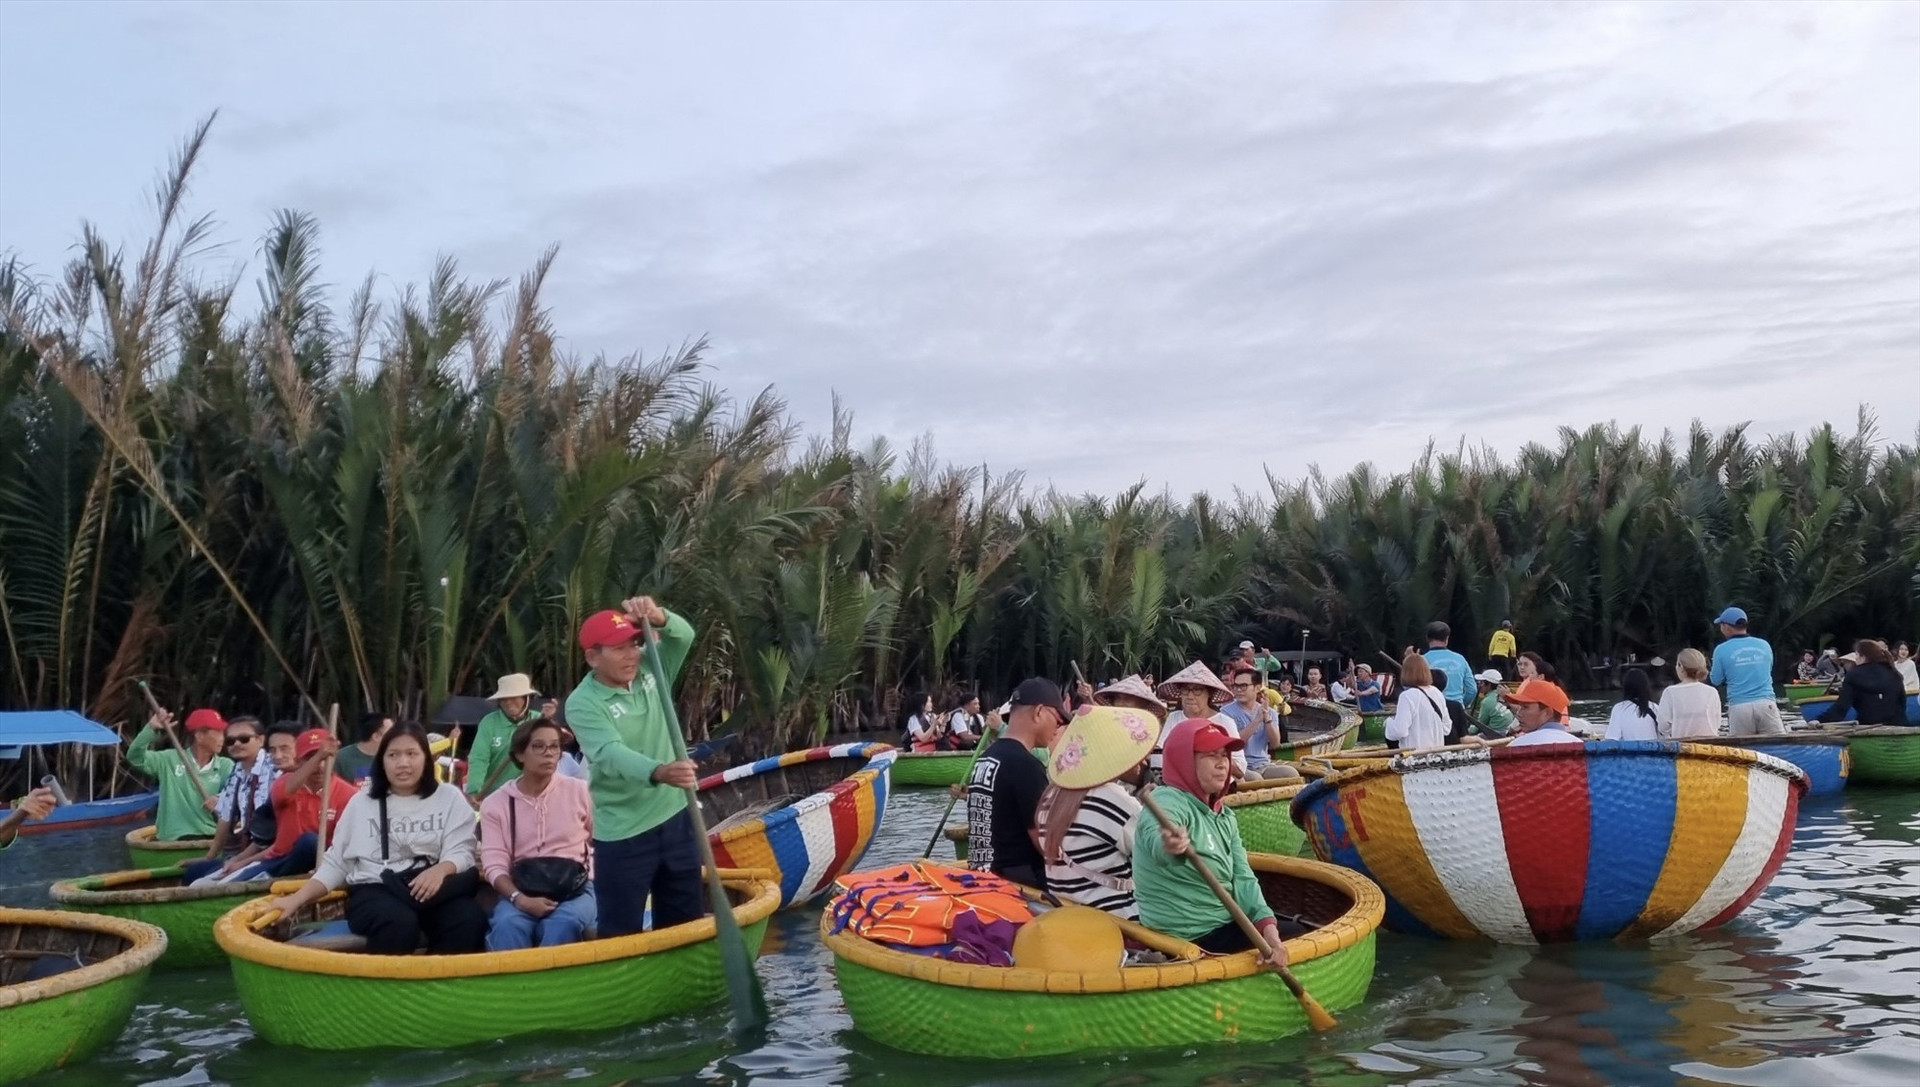 Đoàn famtrip trải nghiệm hoạt động thuyền thúng tại rừng dừa nước Cẩm Thanh. Ảnh: K.L